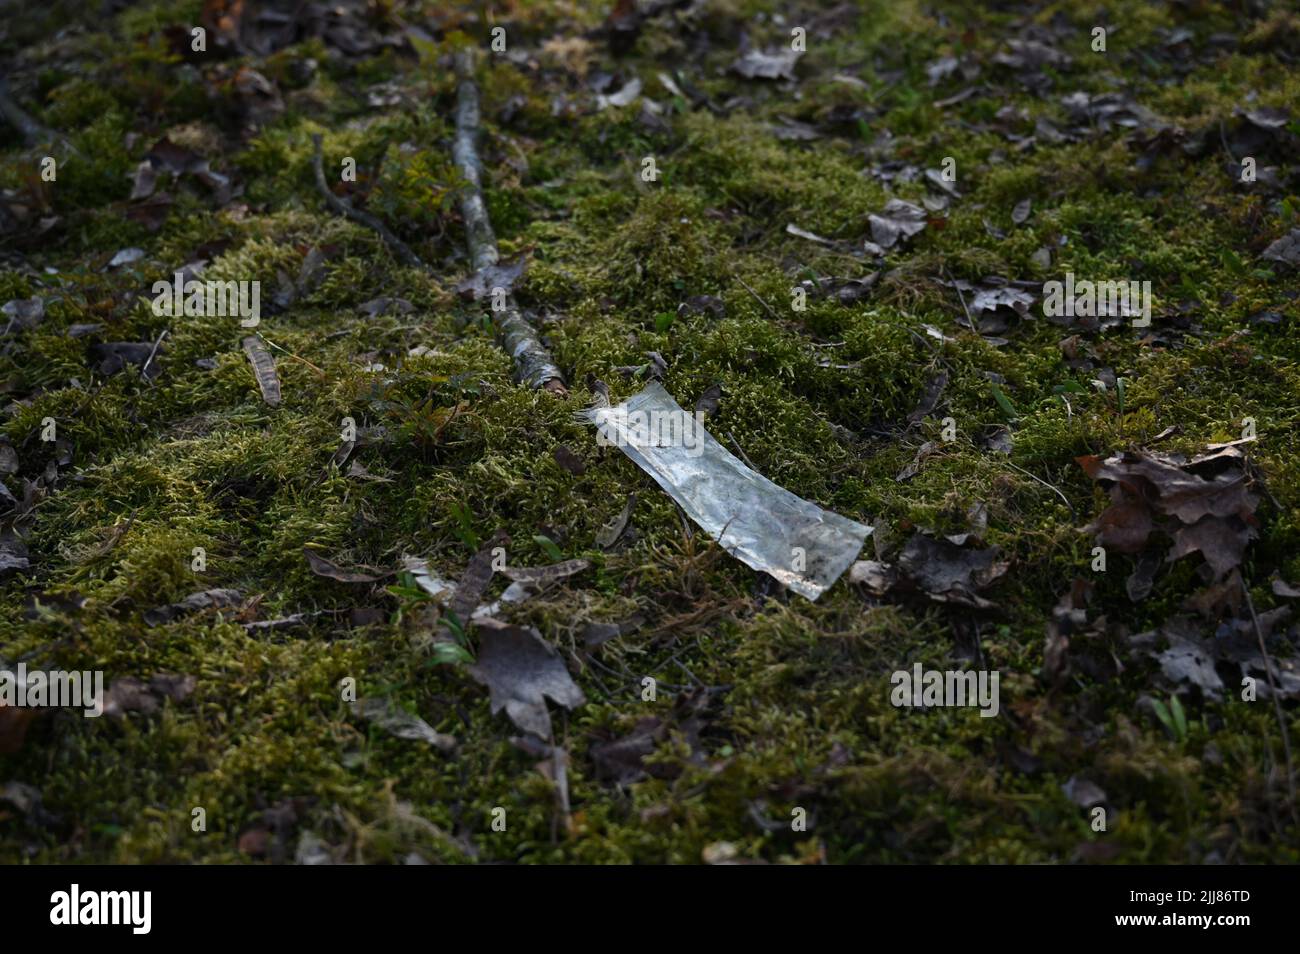 Una basura plástica en el ambiente del bosque Foto de stock